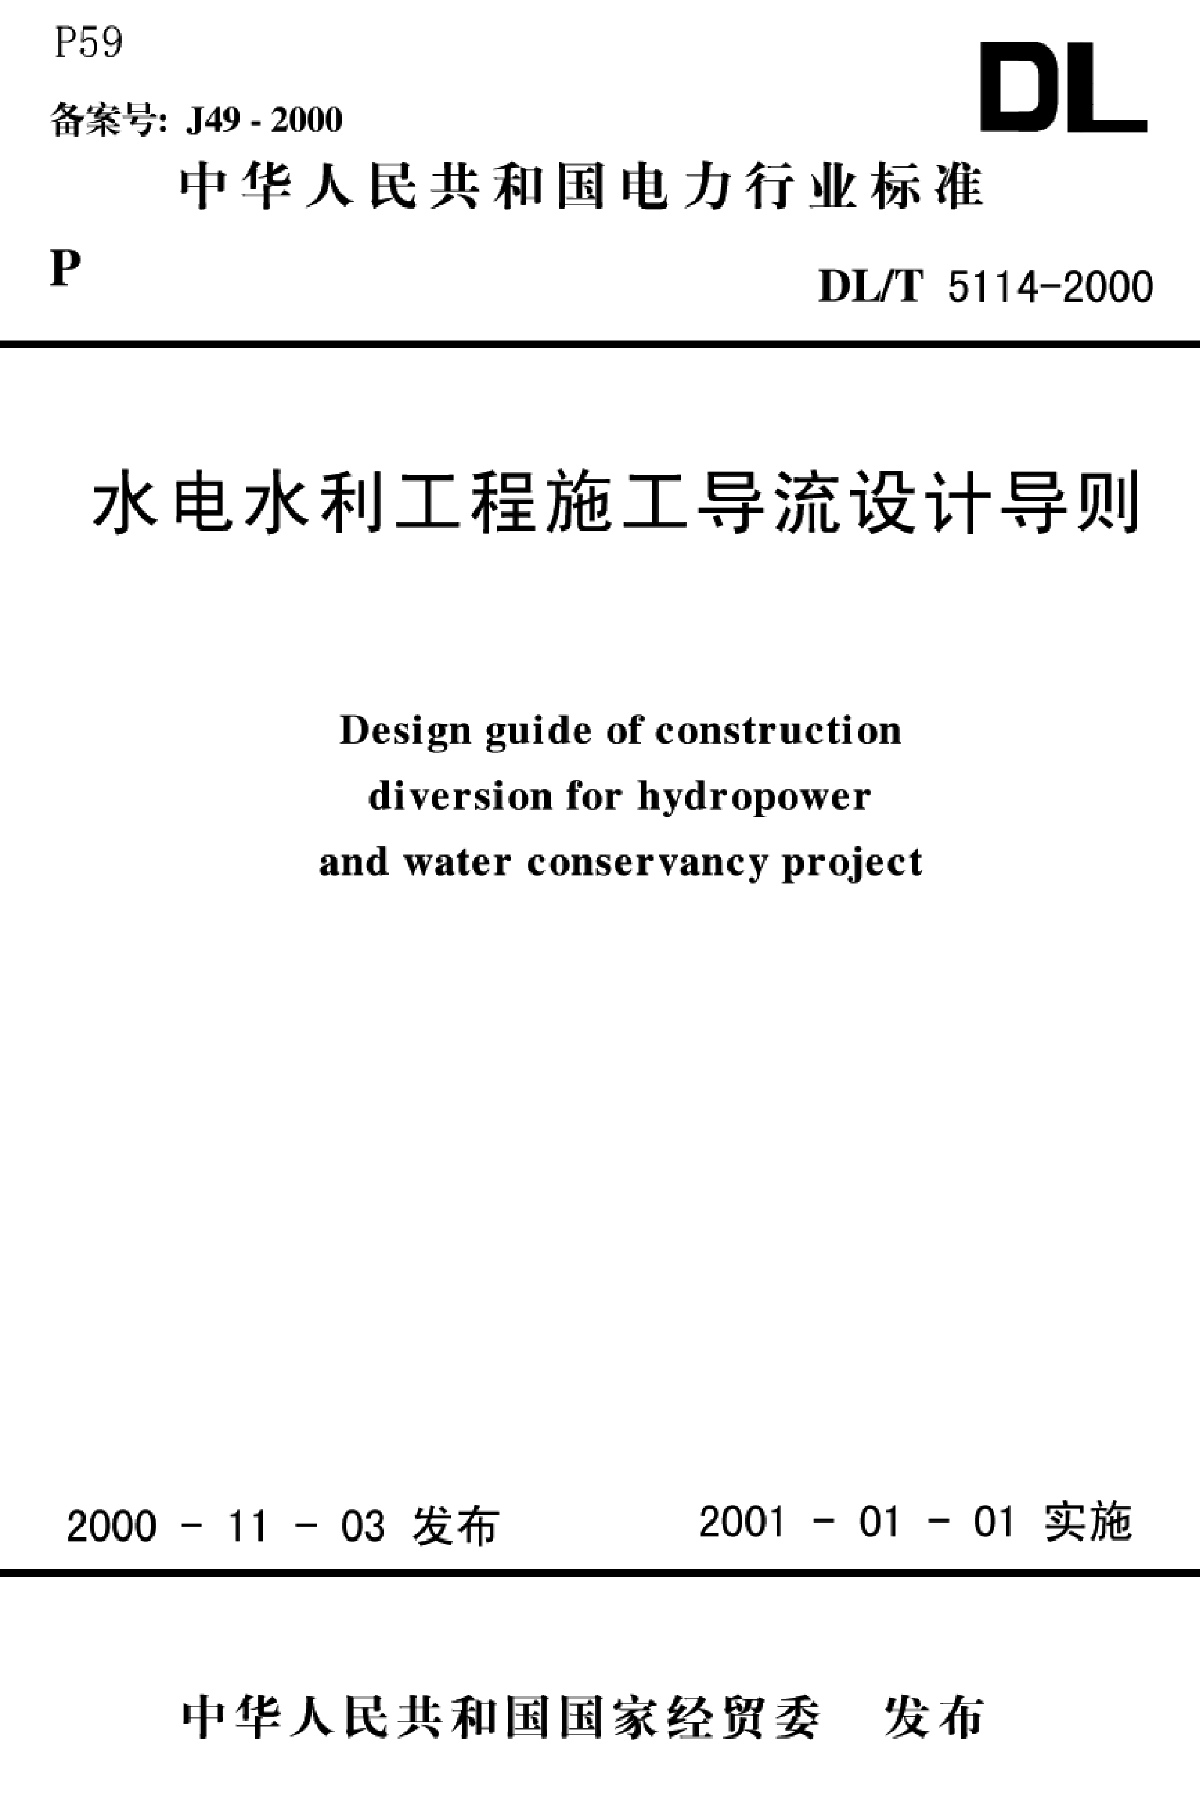 水电水利工程施工导流设计导则